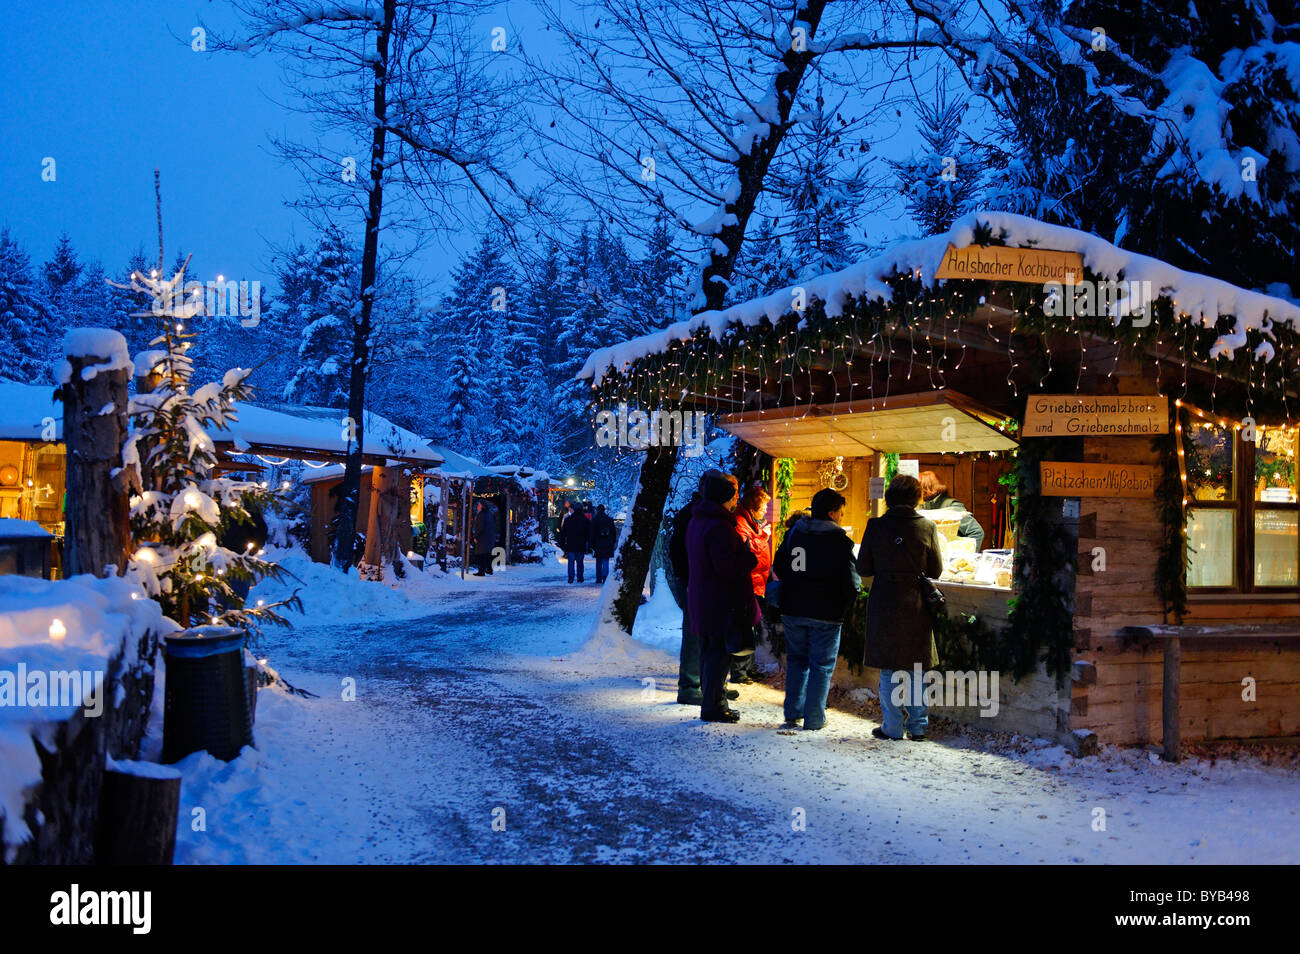 Weihnachtsmarkt in der Waldbühne, Wald-Bühne, Bach, Upper Bavaria,  Deutschland, Europa Stockfotografie - Alamy